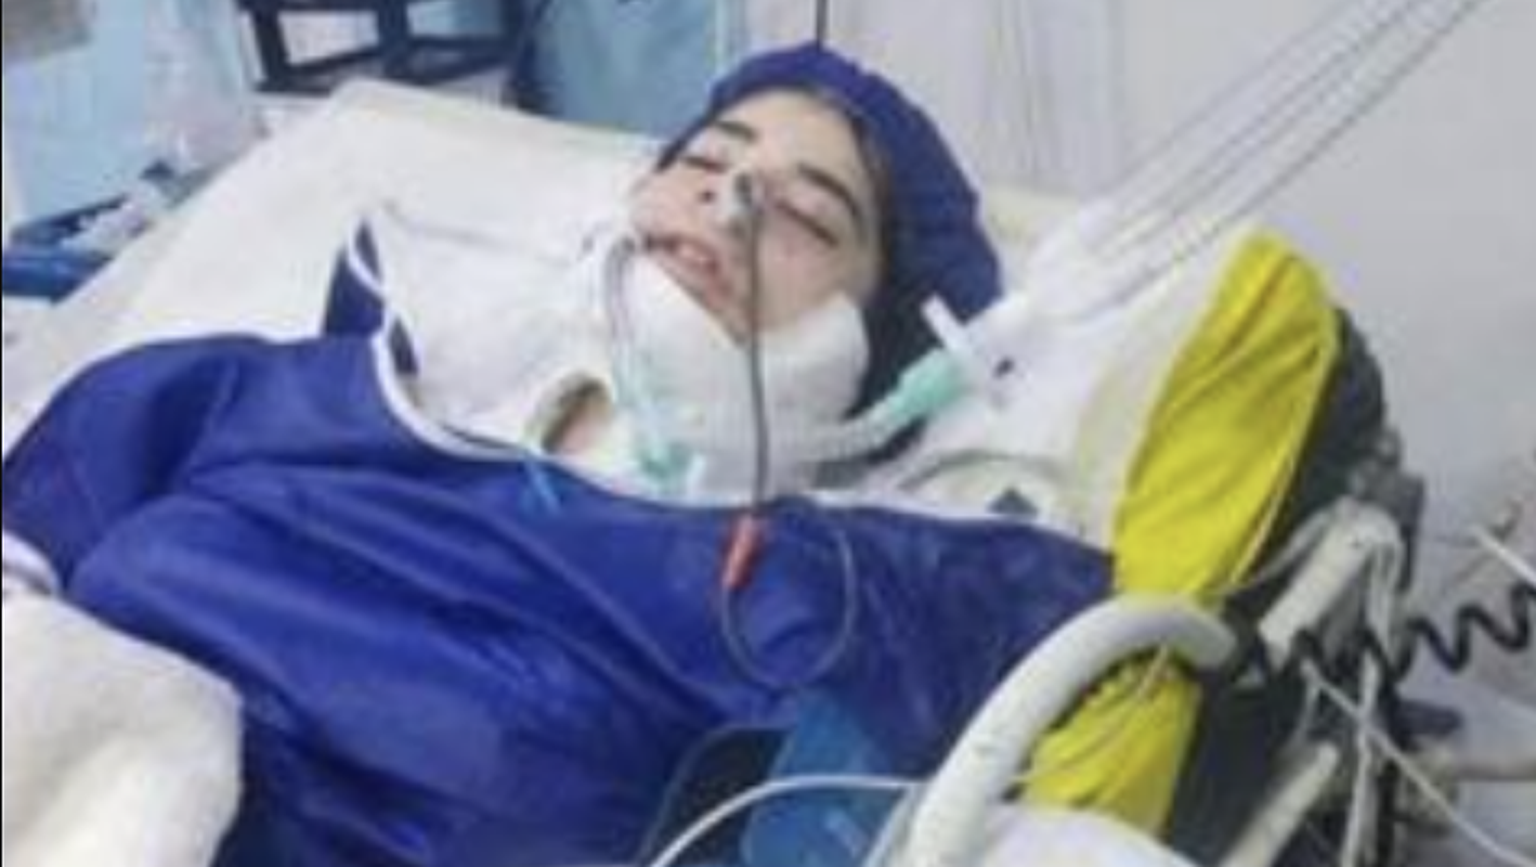 Armita Garawand. Eine 16-jährige Iranerin ist nach einer mutmasslichen Konfrontation mit der berüchtigten Moralpolizei gestorben.